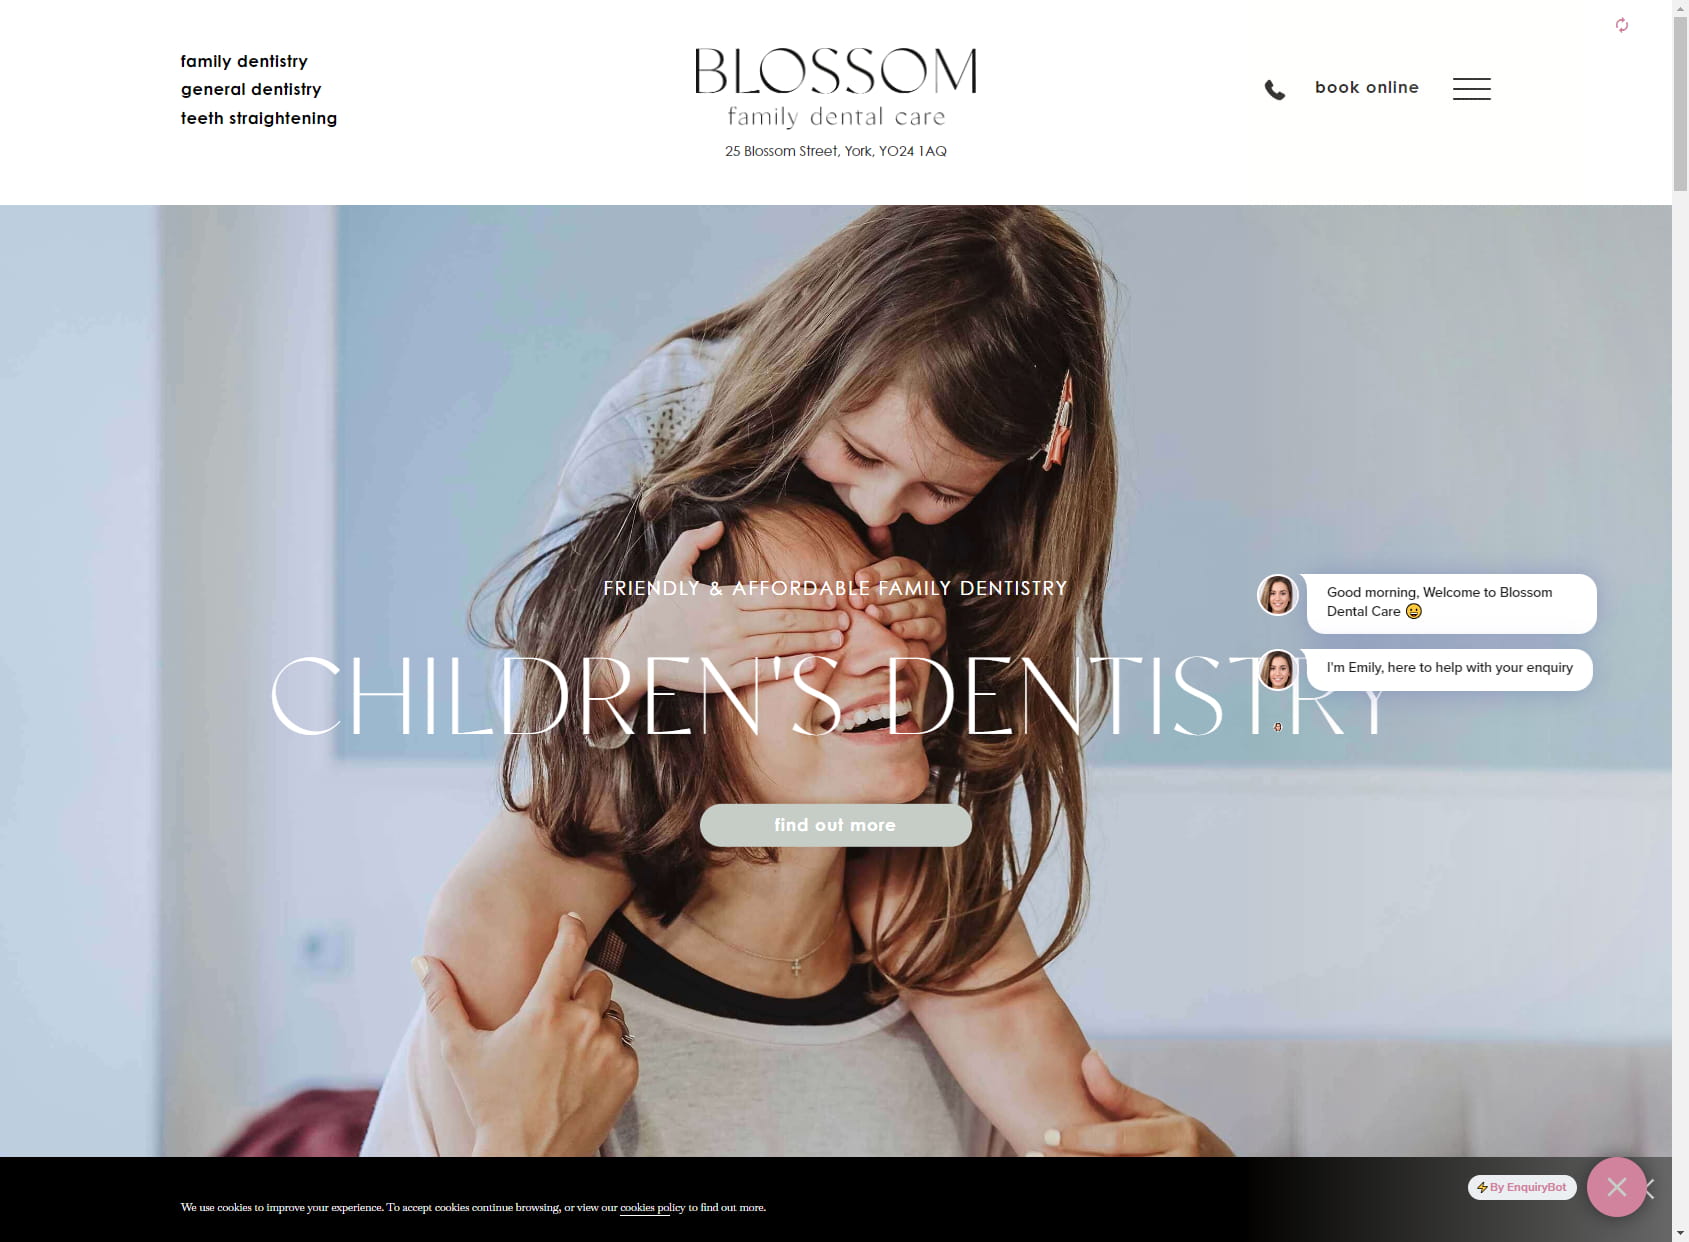 Blossom Family Dental Care